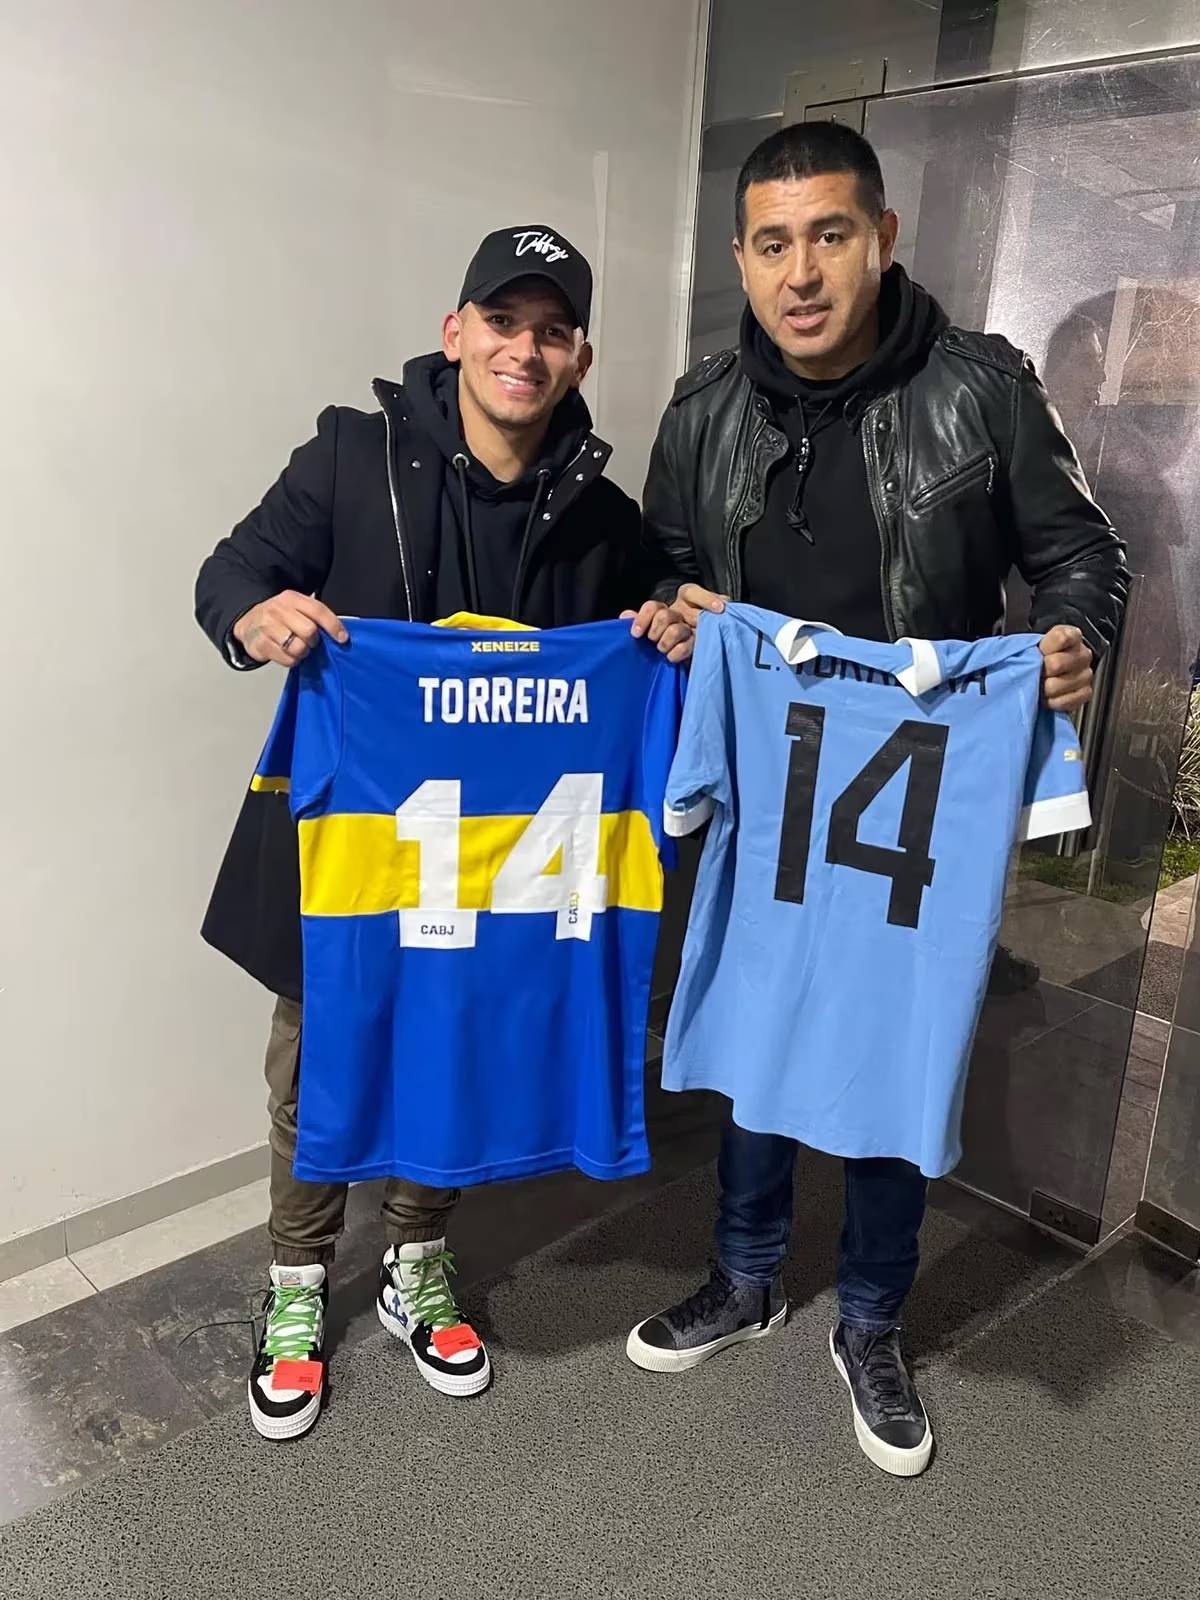 El uruguayo Lucas Torreira volvió a manifestar que “se muere por jugar en Boca” y confía en que la chance está cada vez más cerca.